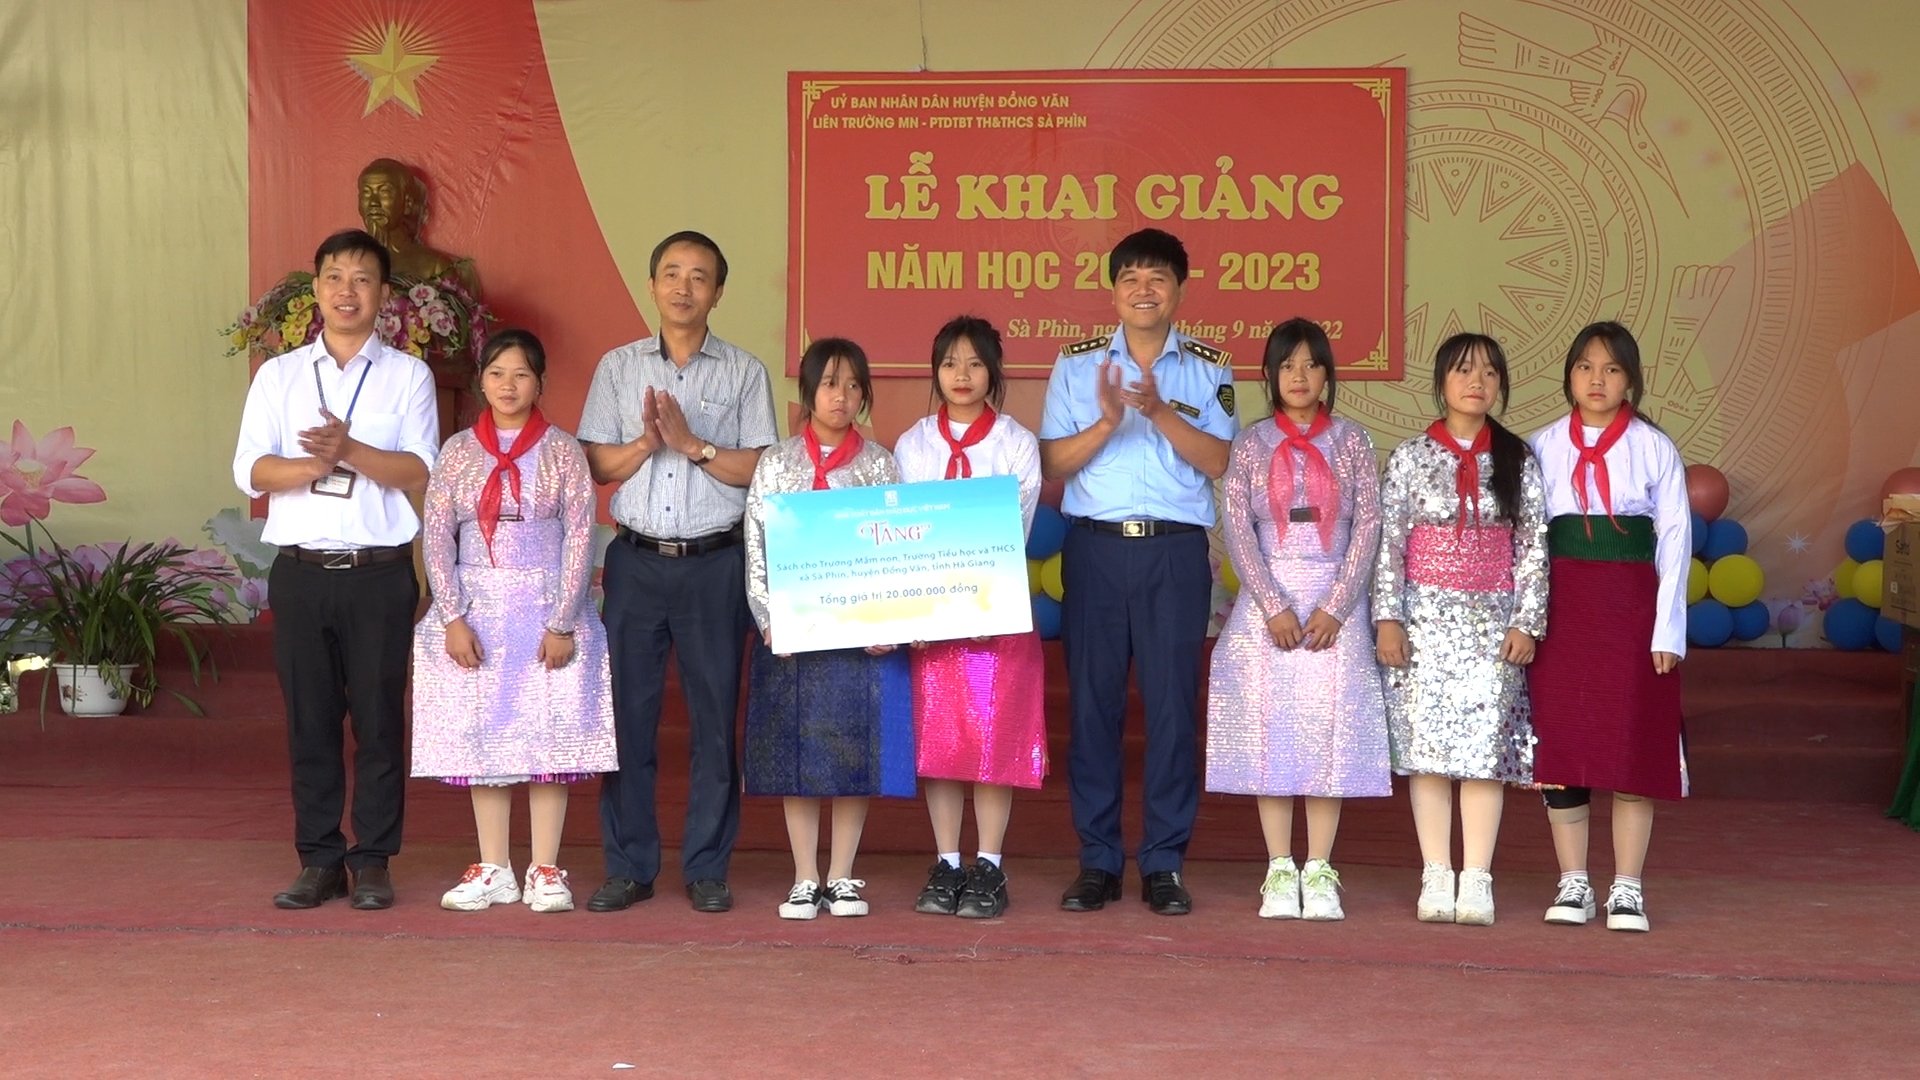 NXB Giáo dục Việt Nam trao tặng sách cho học sinh xã Sà Phìn và Du Tiến ở Hà Giang